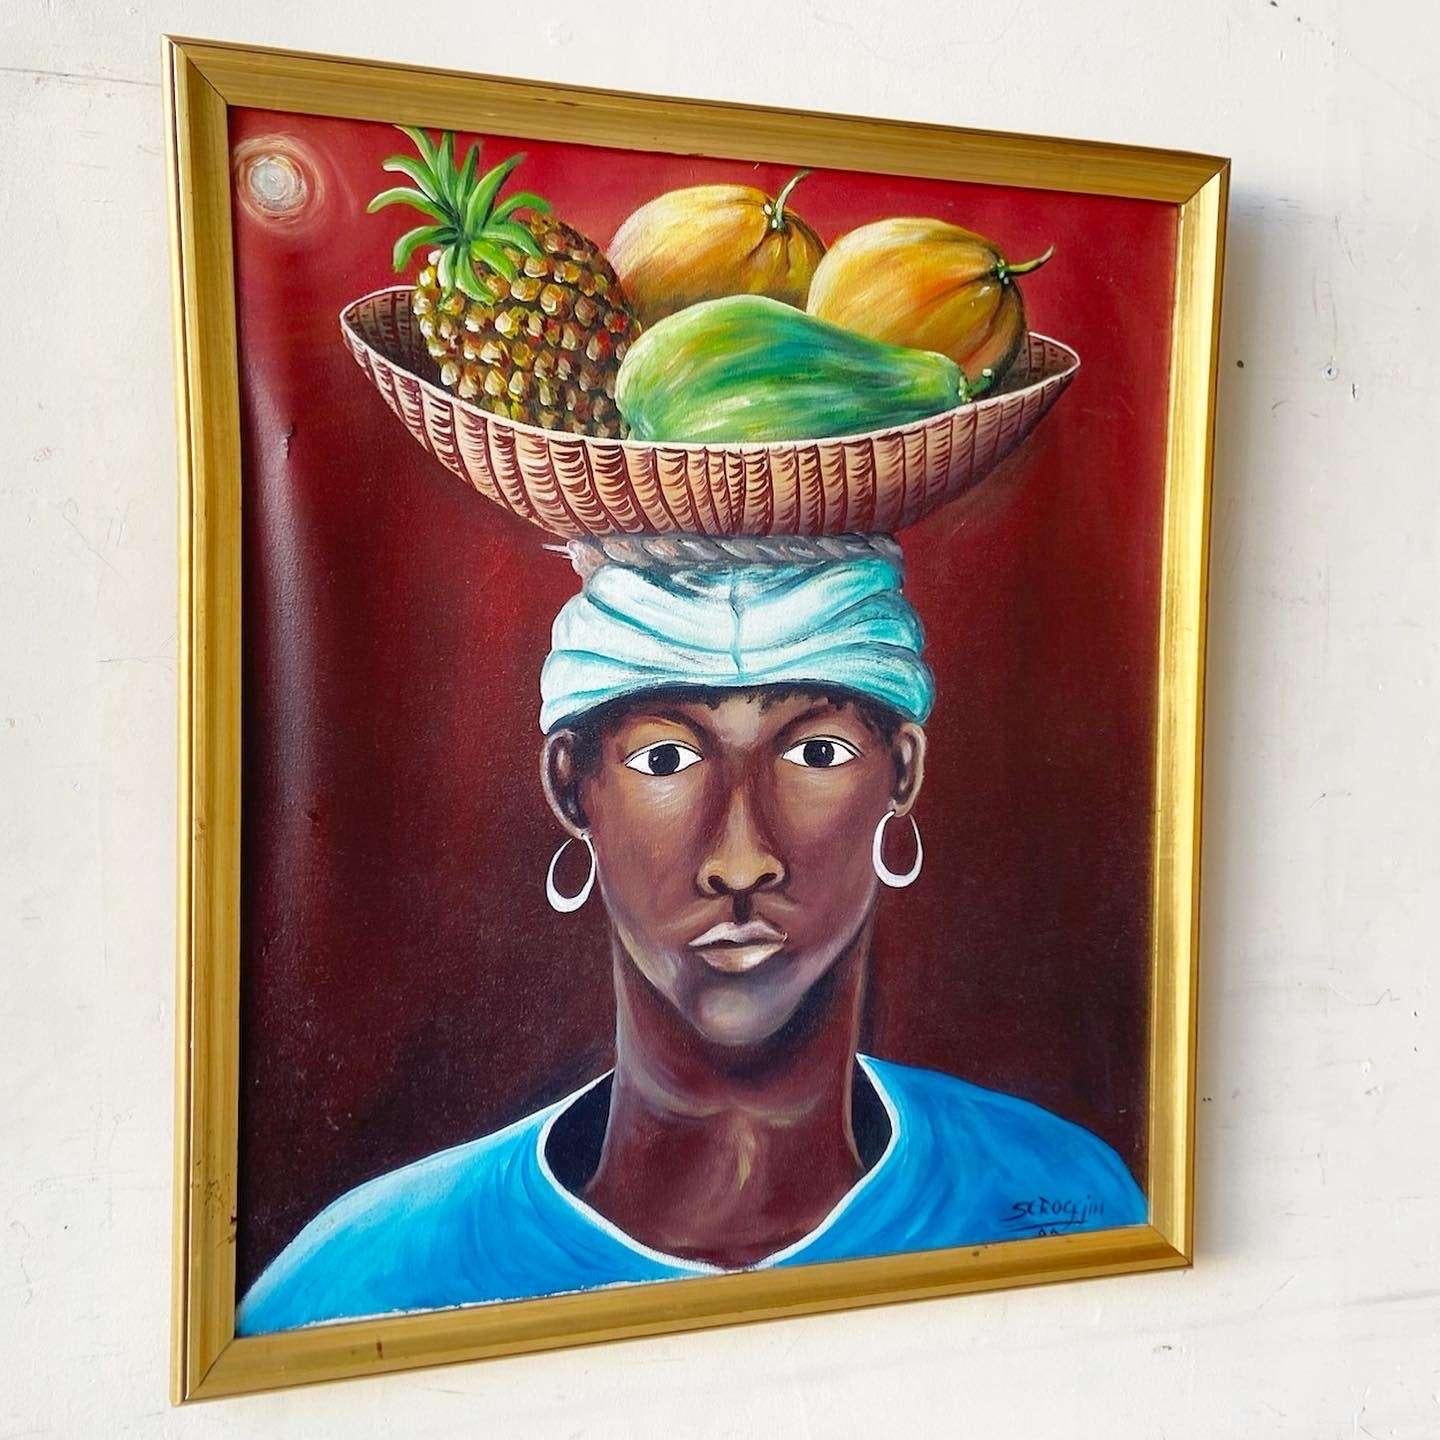 Exceptionnelle peinture à l'huile originale encadrée de Scroggin. Le sujet est une femme des Caraïbes avec un arc de fruits sur la tête.
